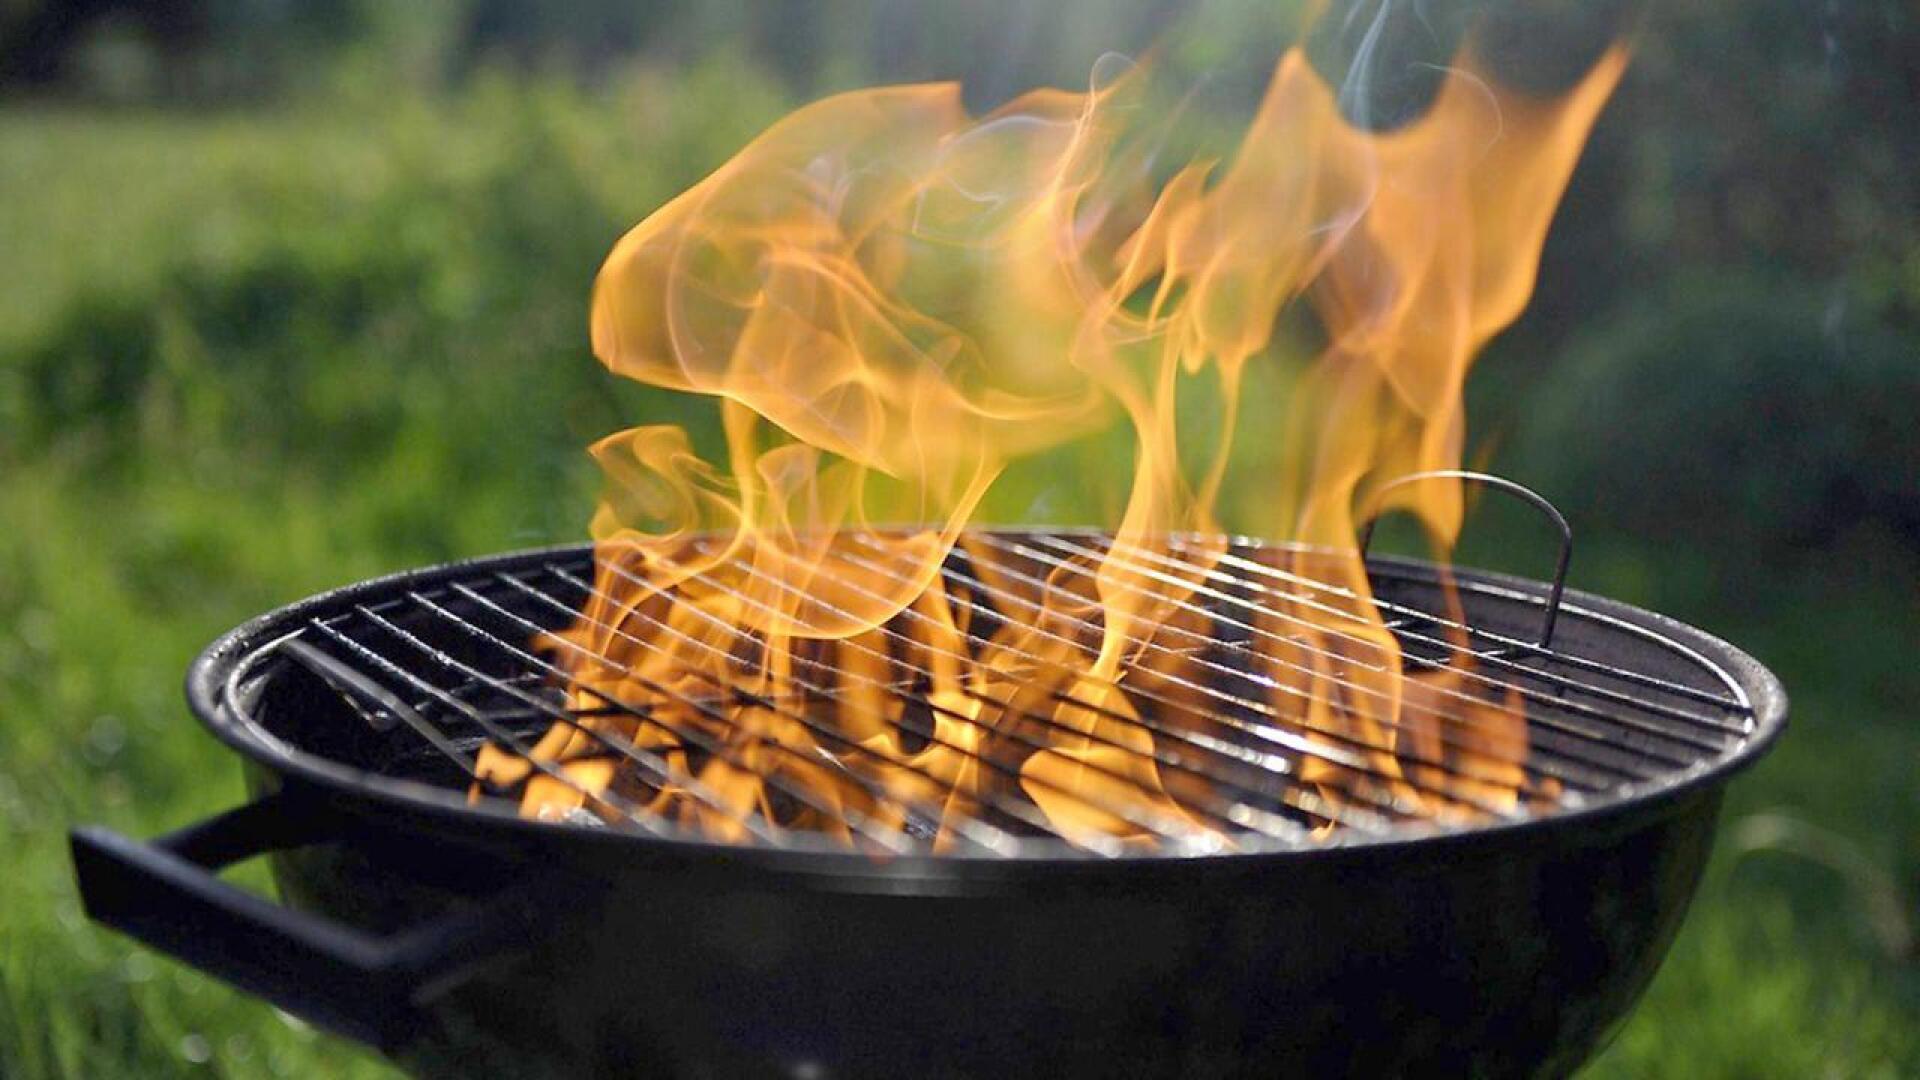 Hiilligrillillä grillatessa Leimahdusvaara vältetään antamalla sytytysnesteen imeytyä hiiliin, minkä jälkeen hiilet sytytetään varovasti tuulen yläpuolelta. Liekkien ei saa antaa nousta liian korkeiksi.